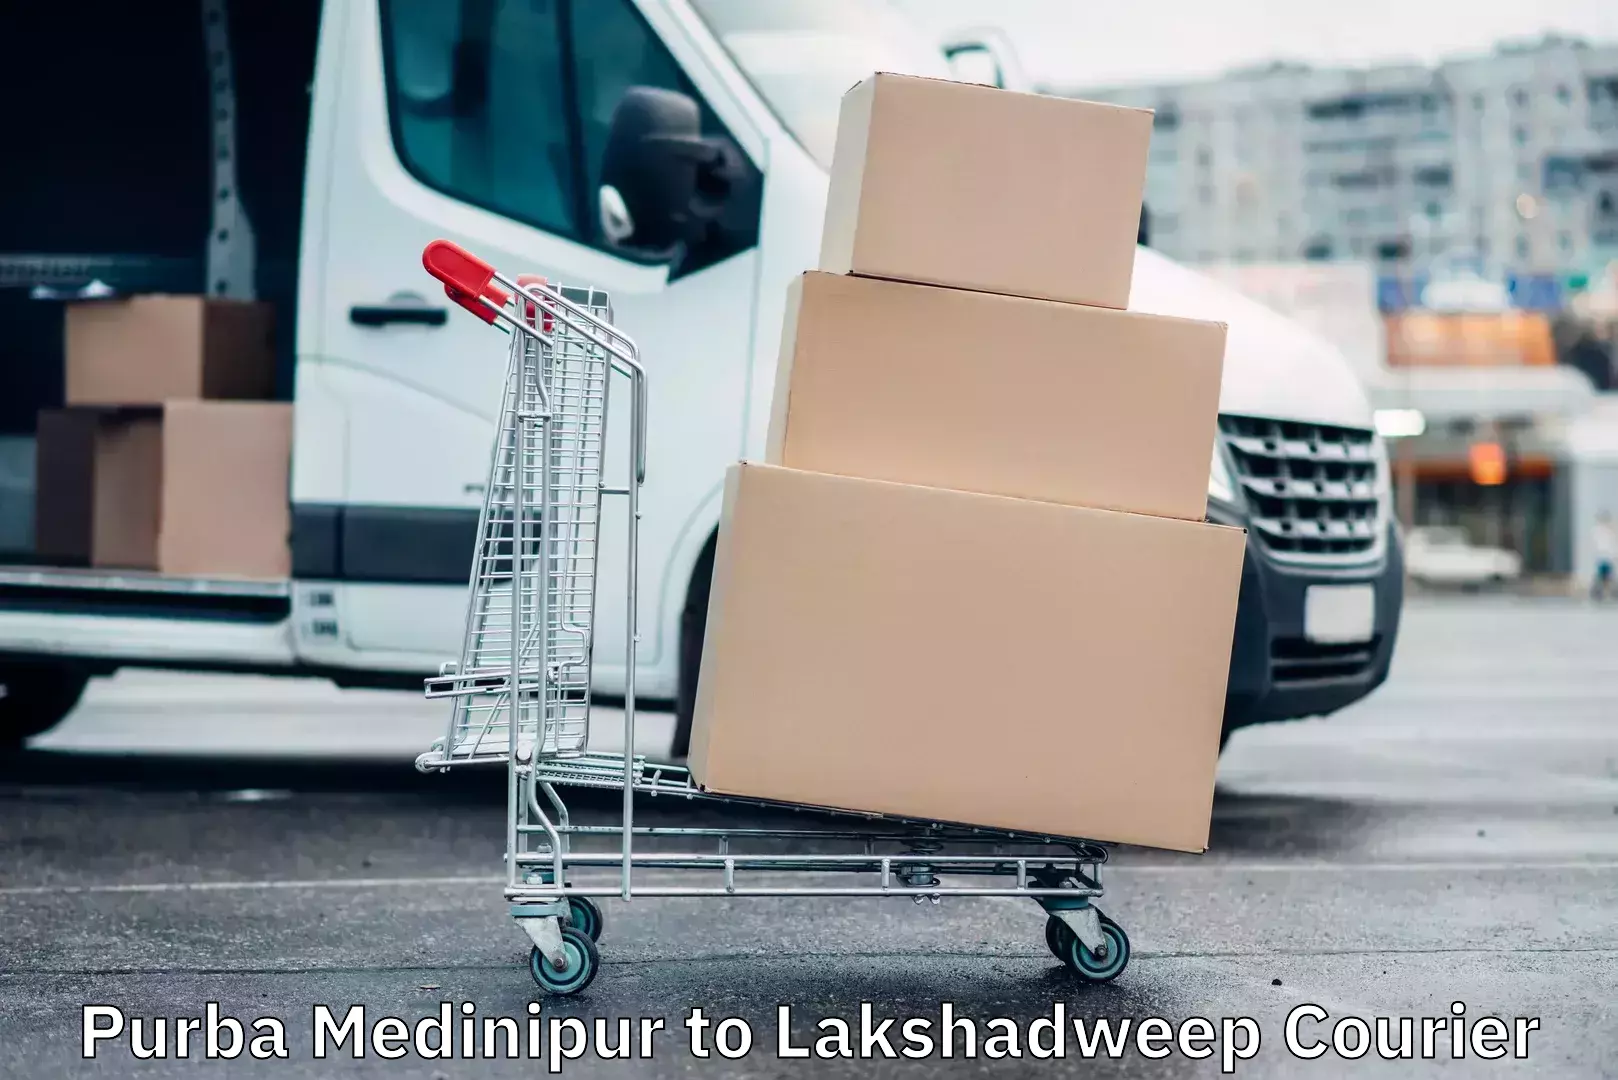 Doorstep delivery service Purba Medinipur to Lakshadweep